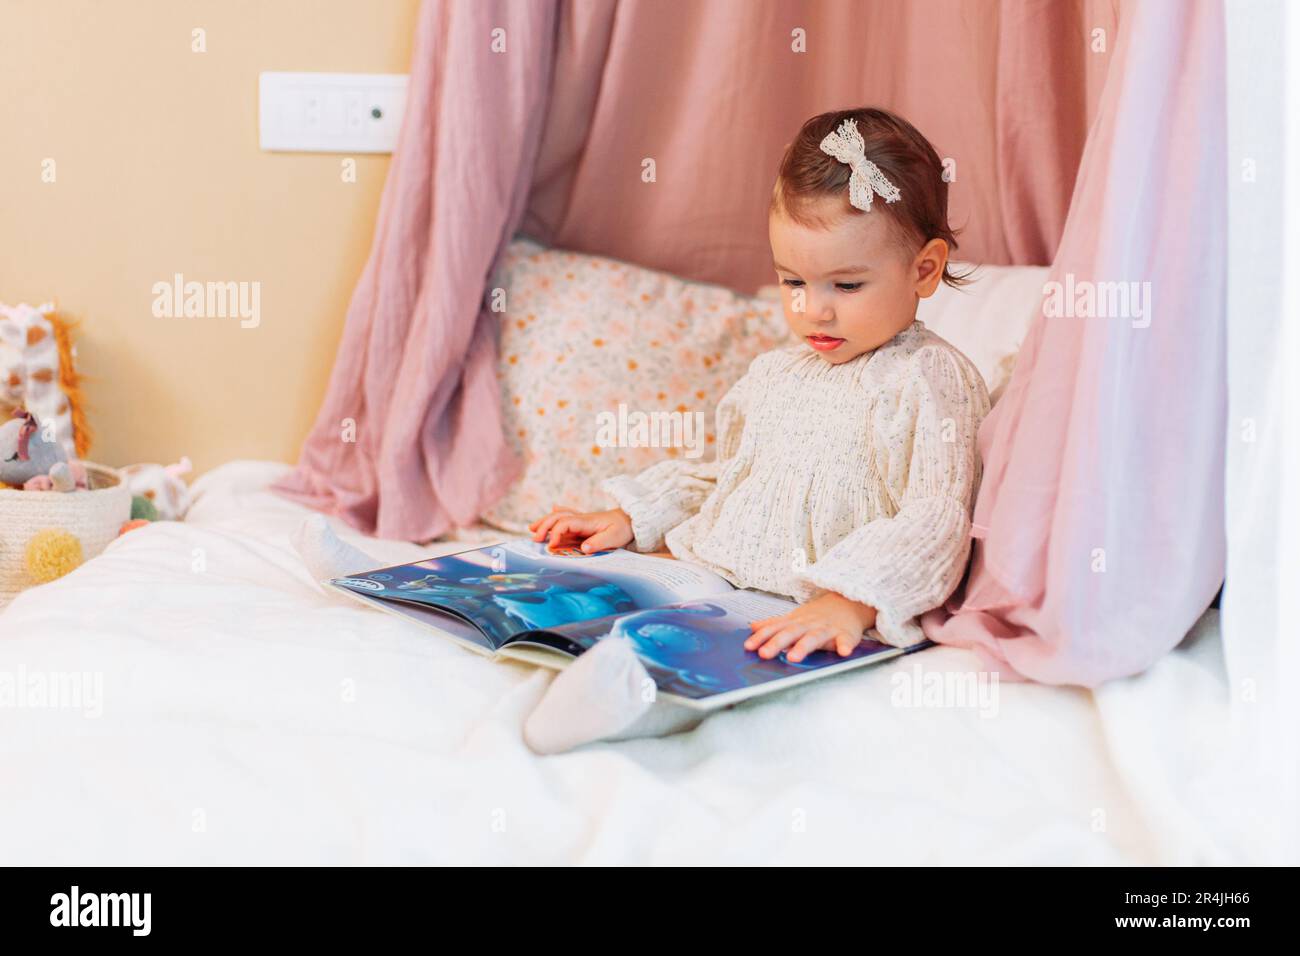 Süßes kleines Mädchen, das auf den Kissen sitzt und ein Buch liest Stockfoto